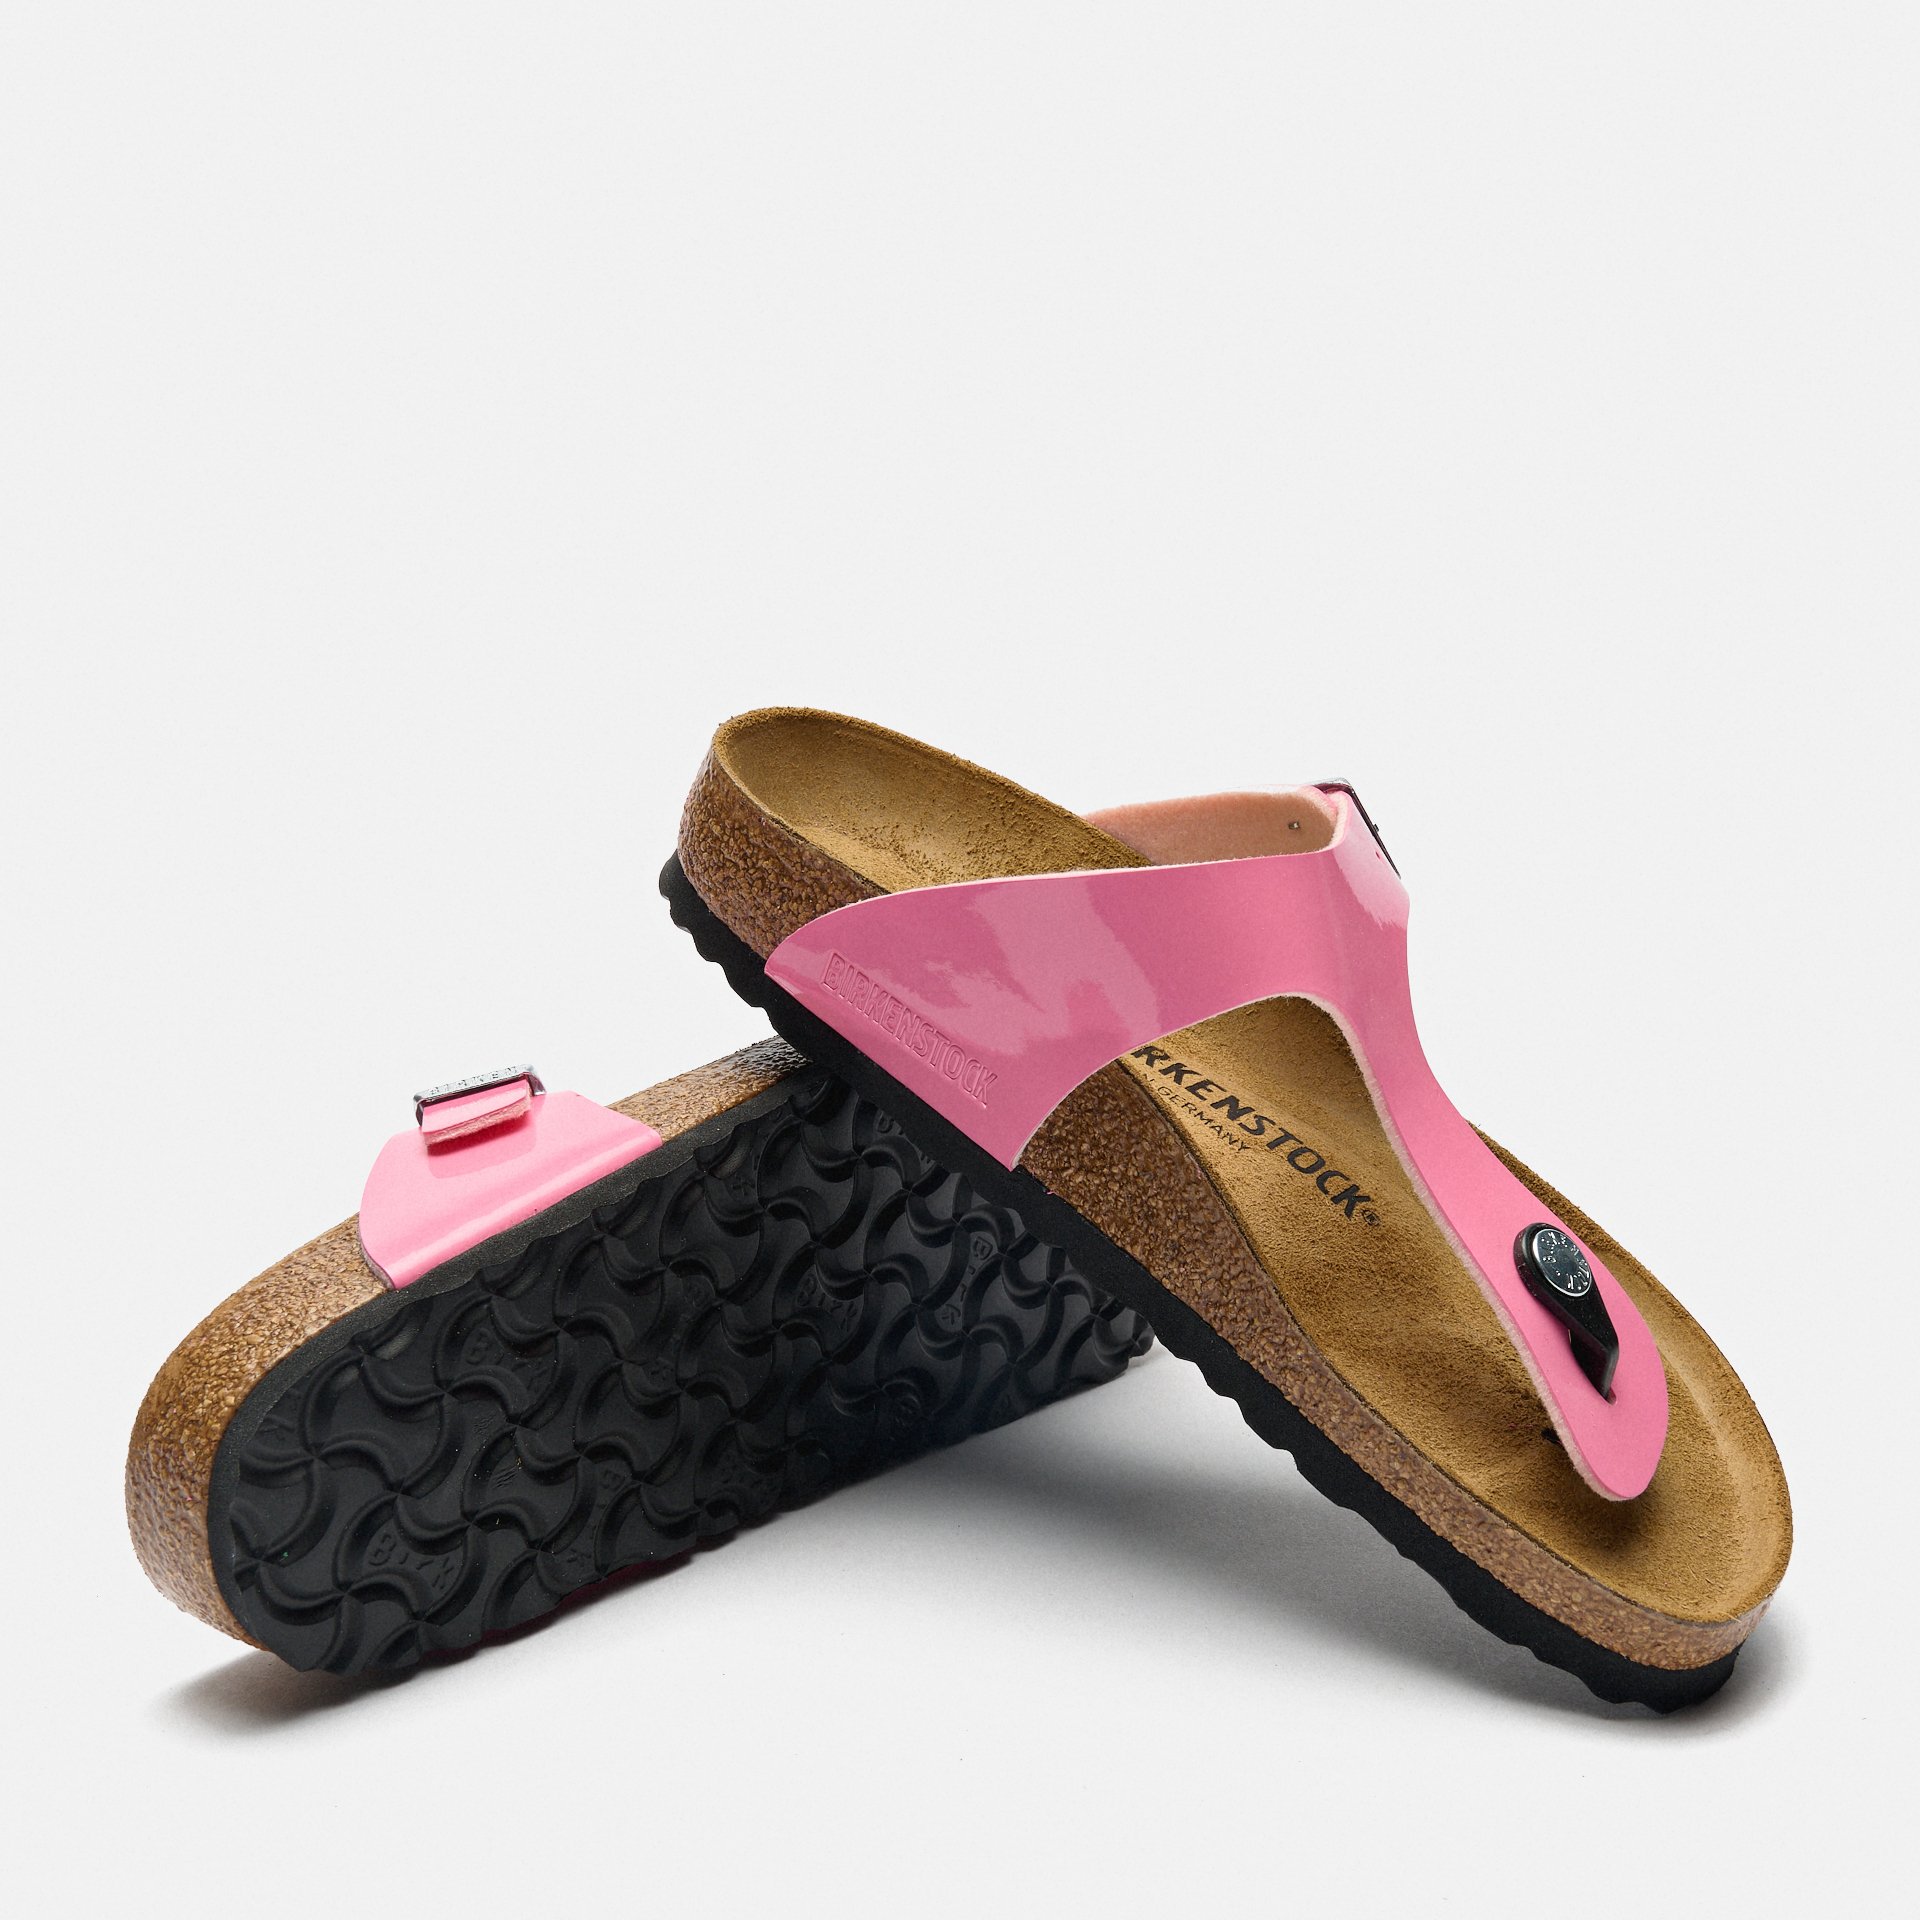 Birkenstock Gizeh Birko-Flor Sandals Patent Candy Pink/Black